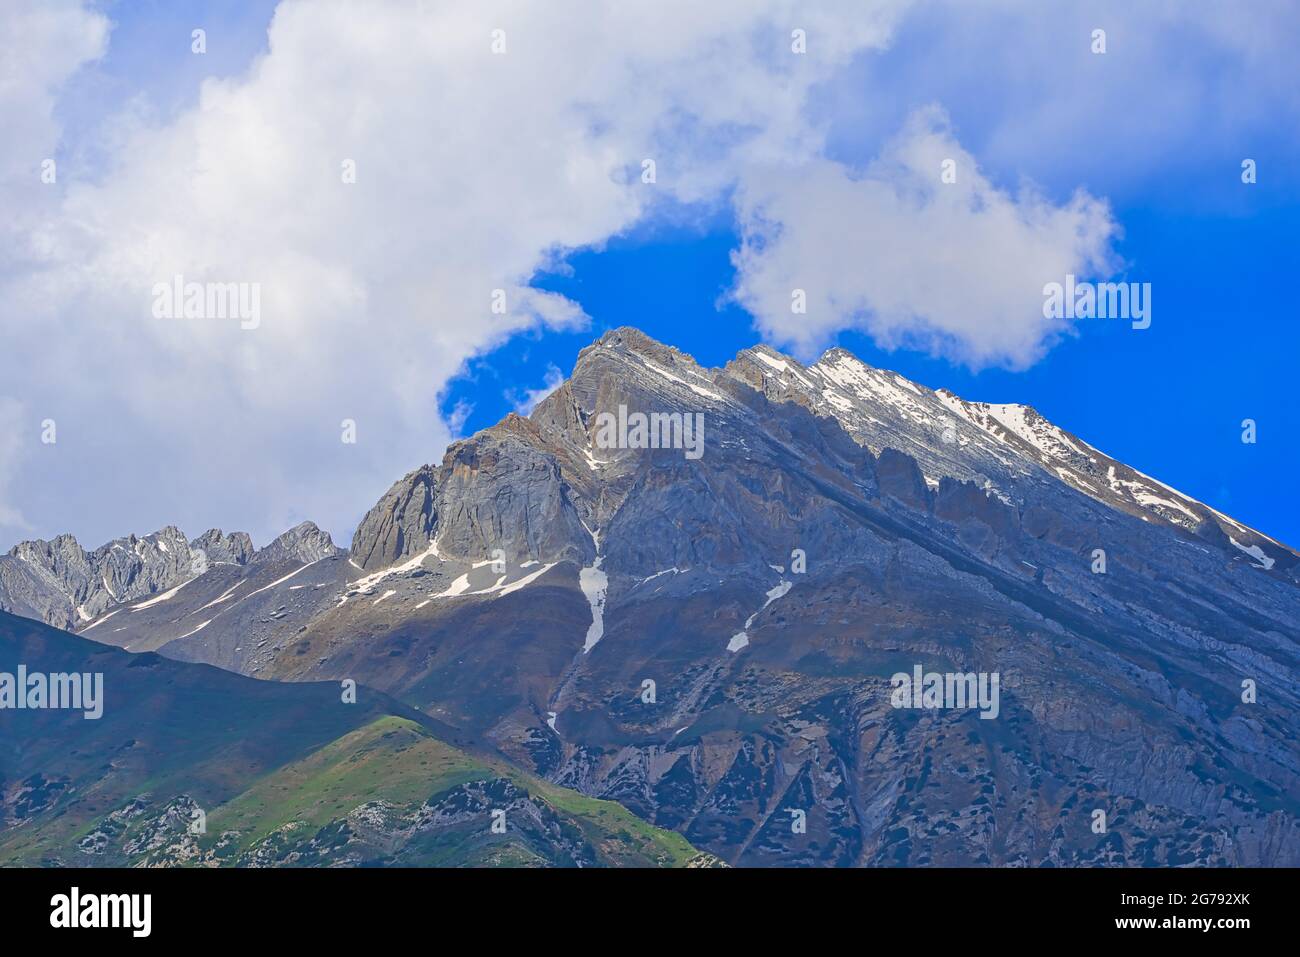 Splendido paesaggio montano. Cielo blu, nuvole bianche, neve bianca. Viaggio approfondito sul Sonamarg Hill Trek a Jammu e Kashmir, India, giugno 2018 Foto Stock